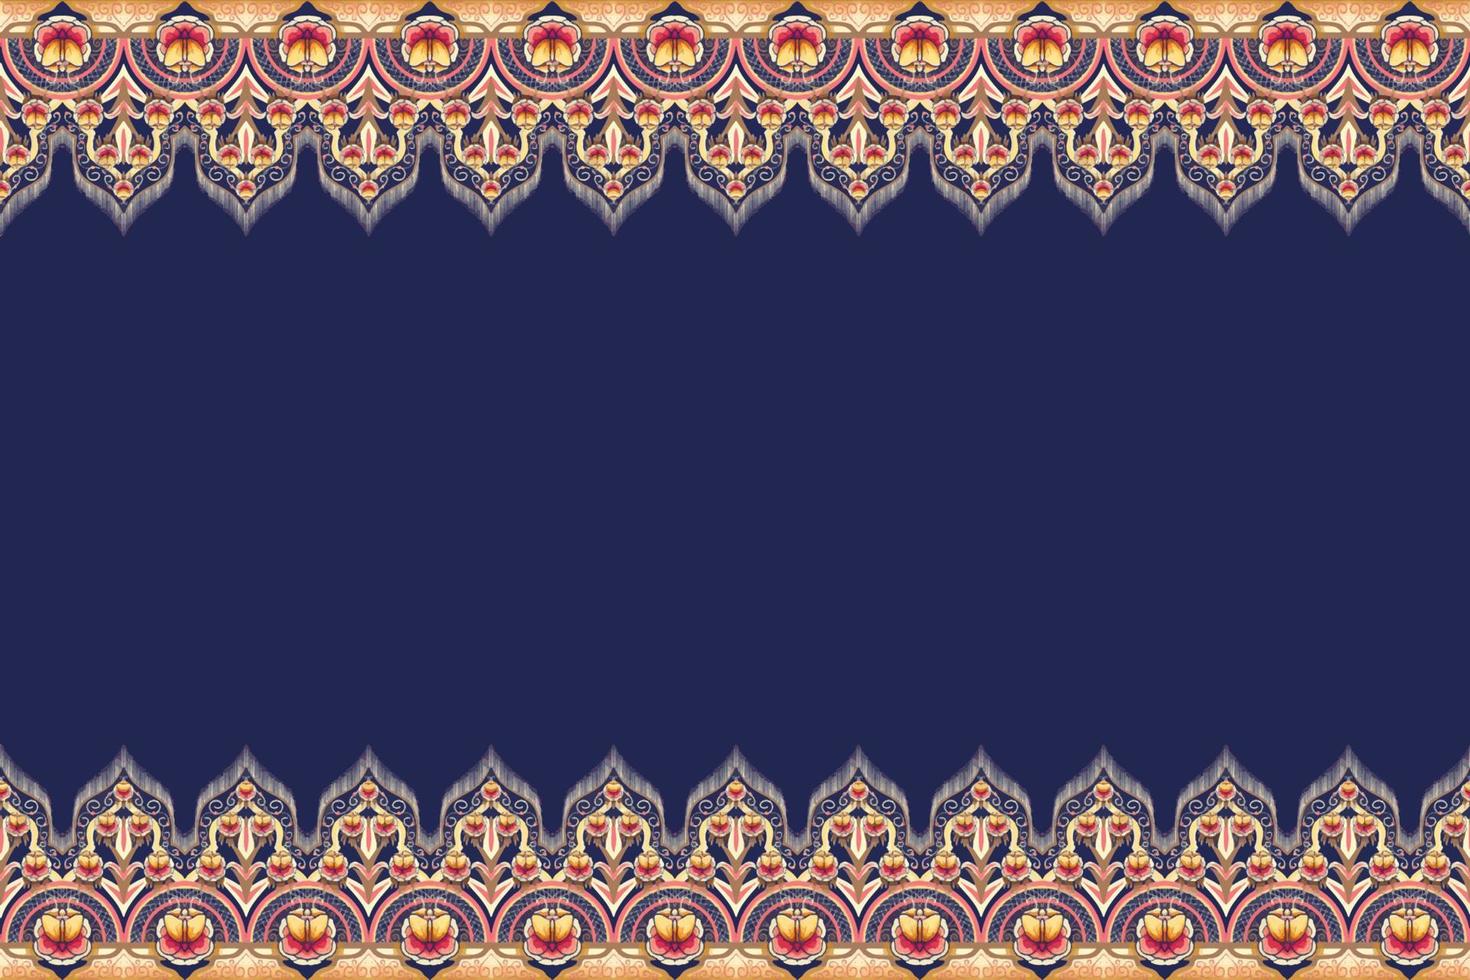 fleur brun jaune rose sur bleu marine. motif oriental ethnique géométrique design traditionnel pour le fond tapis papier peint vêtements emballage batik tissu illustration vectorielle style de broderie vecteur